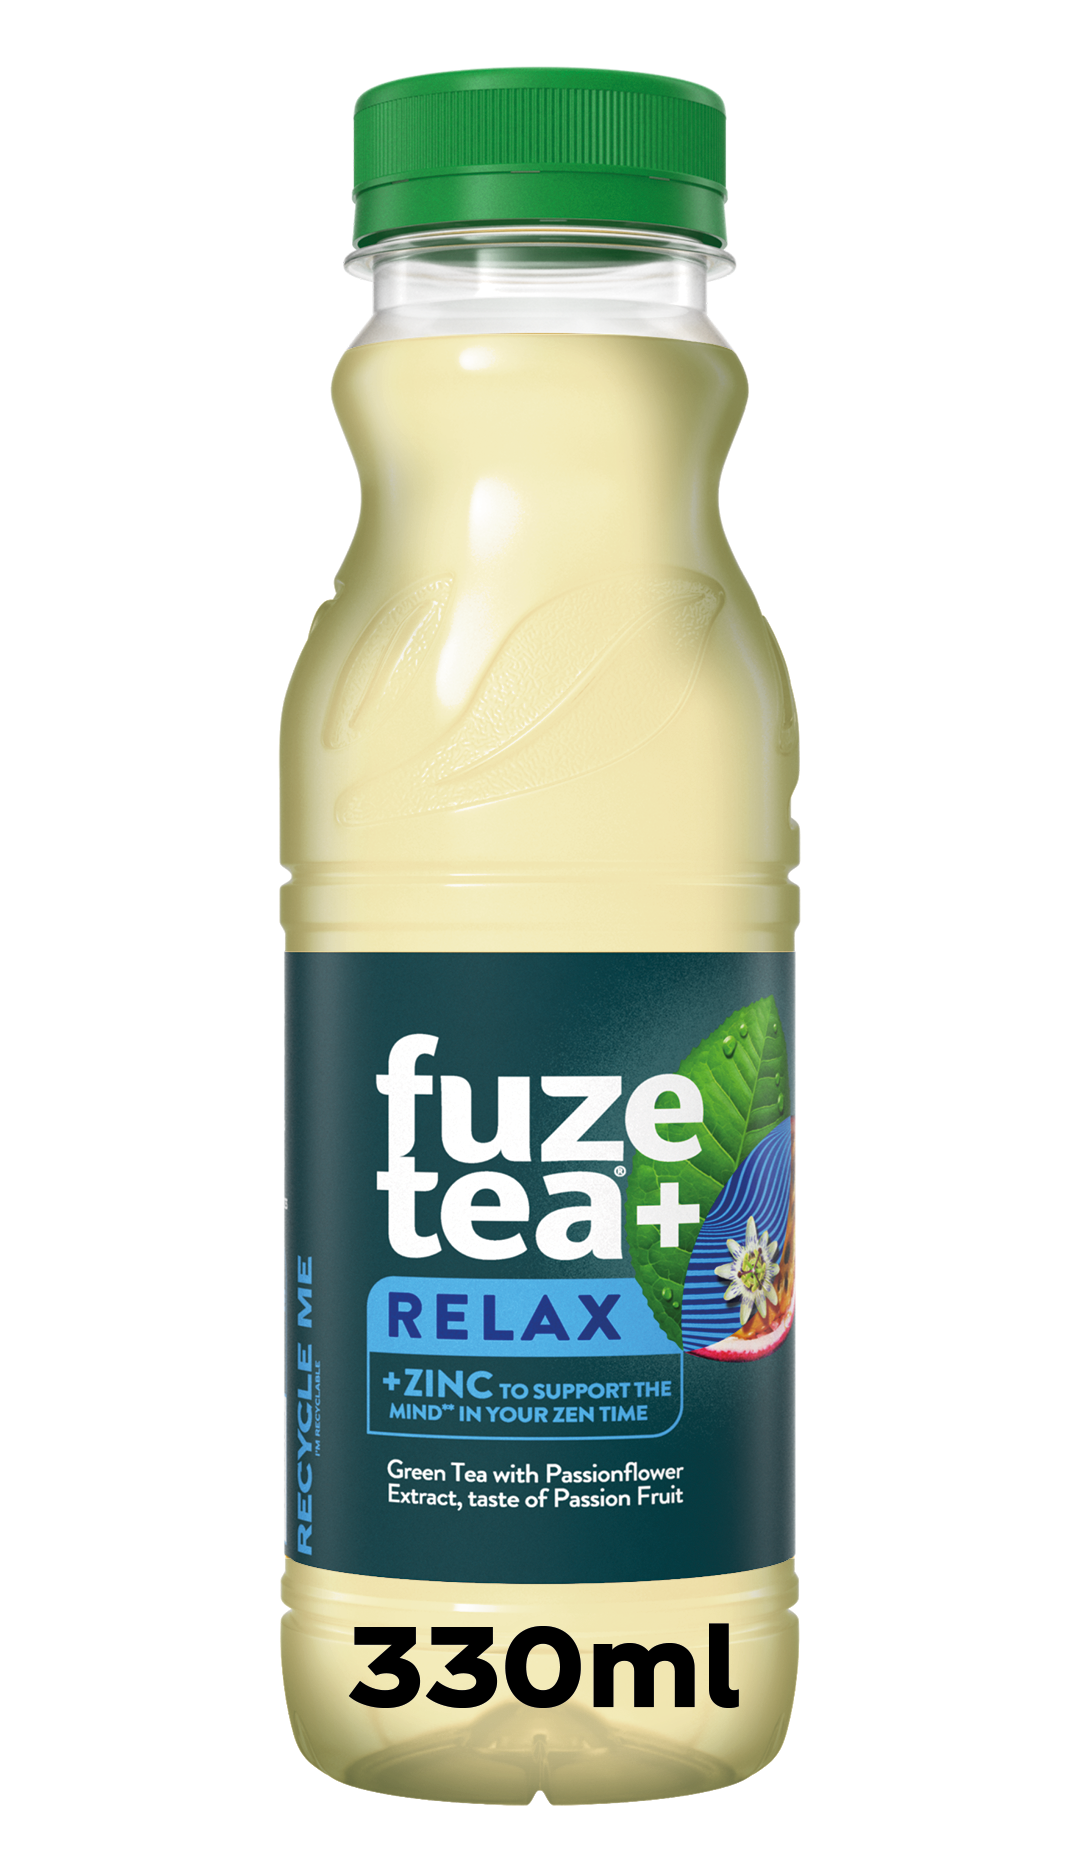 Fuze Tea+ Relax